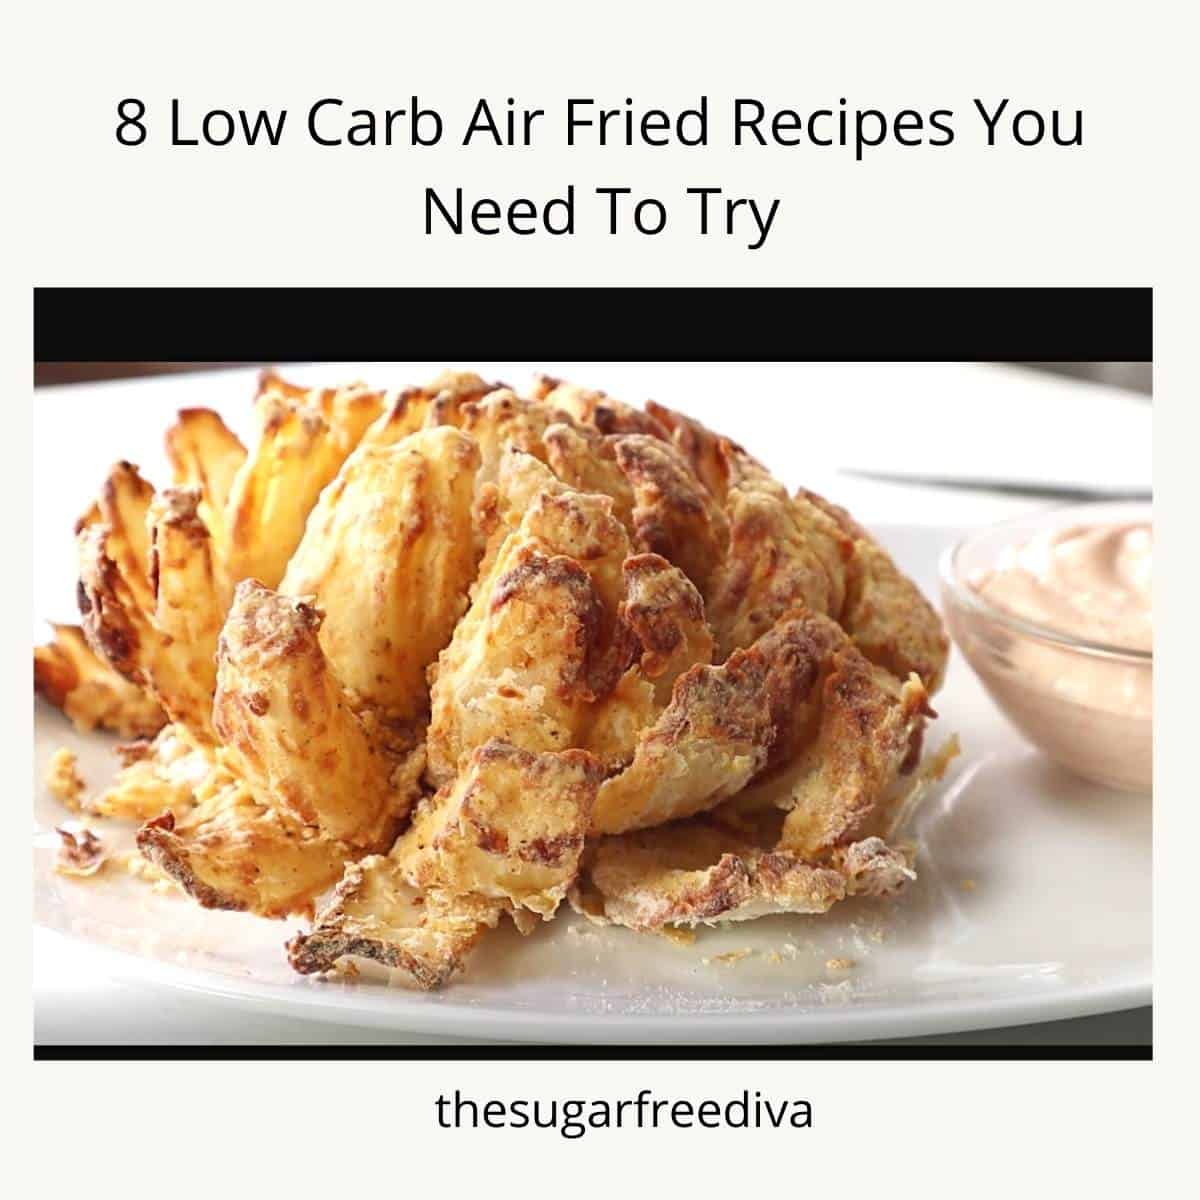 8 recetas fritas al aire bajas en carbohidratos que debes probar